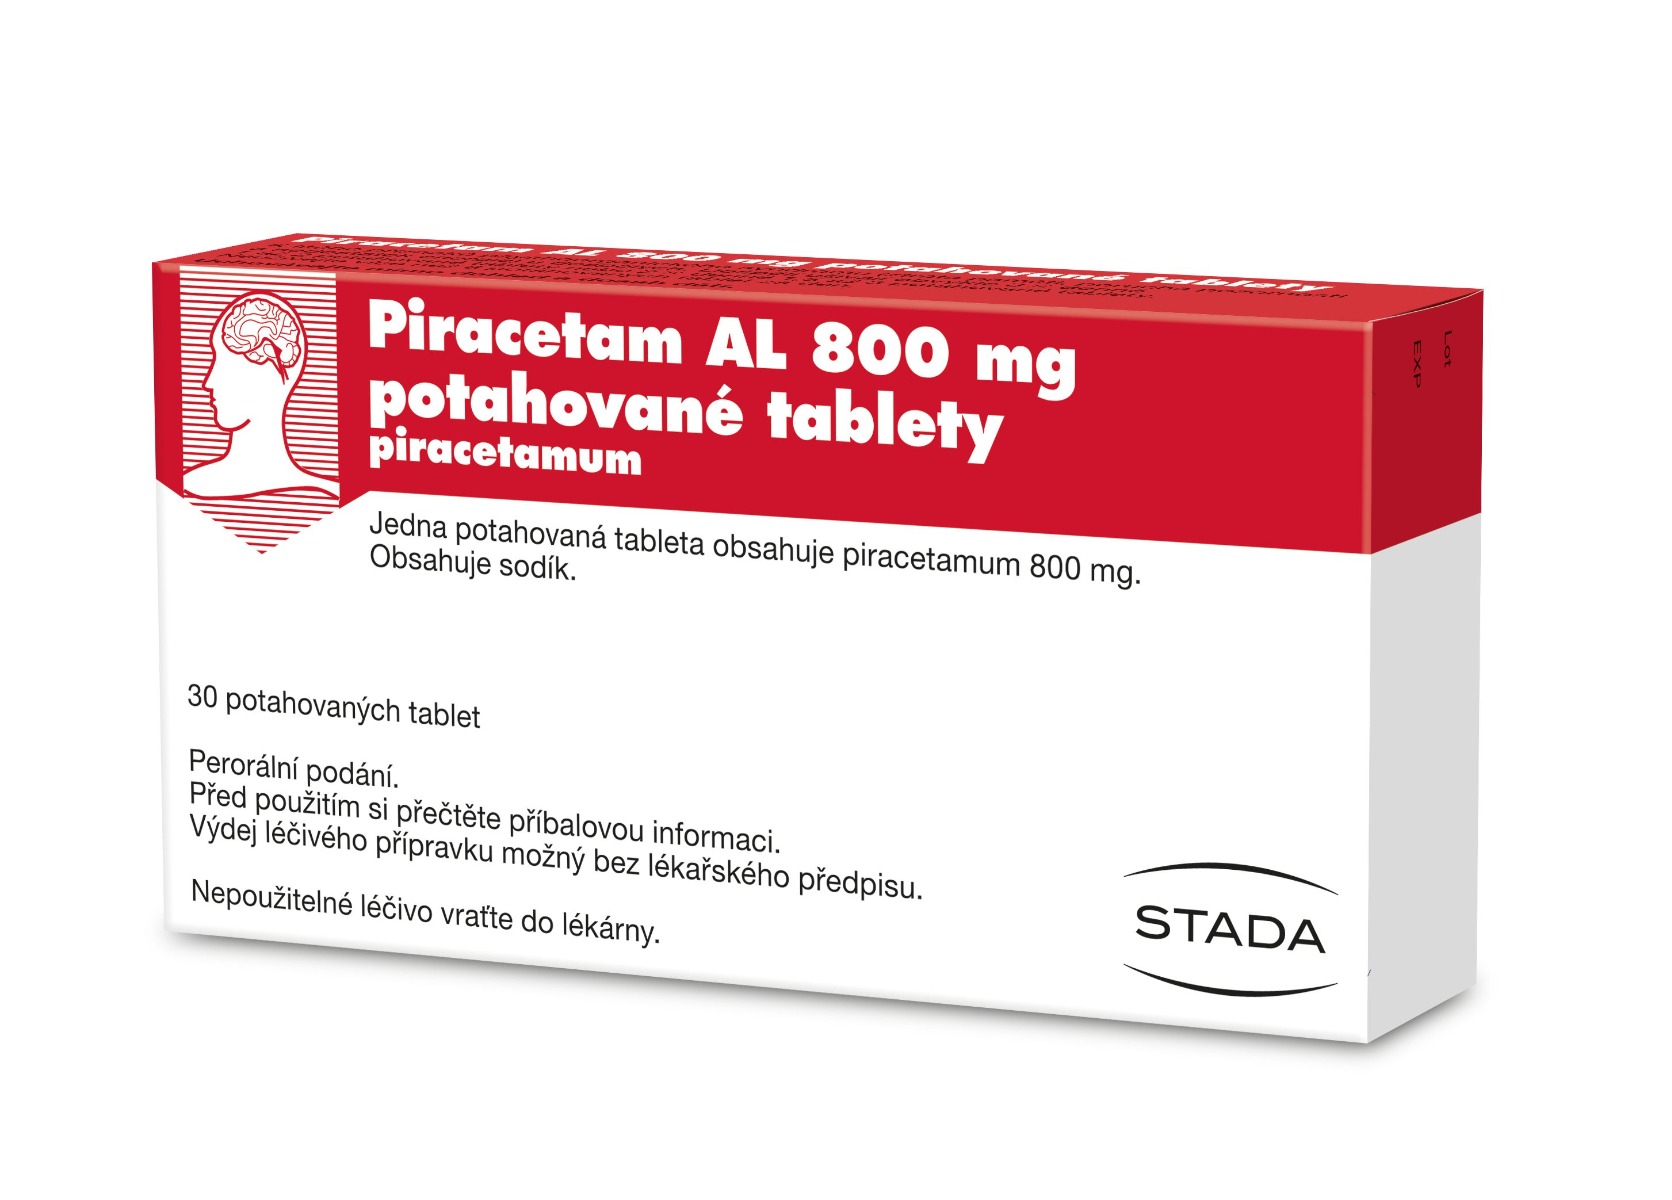 Piracetam AL 800 mg 30 potahovaných tablet Piracetam